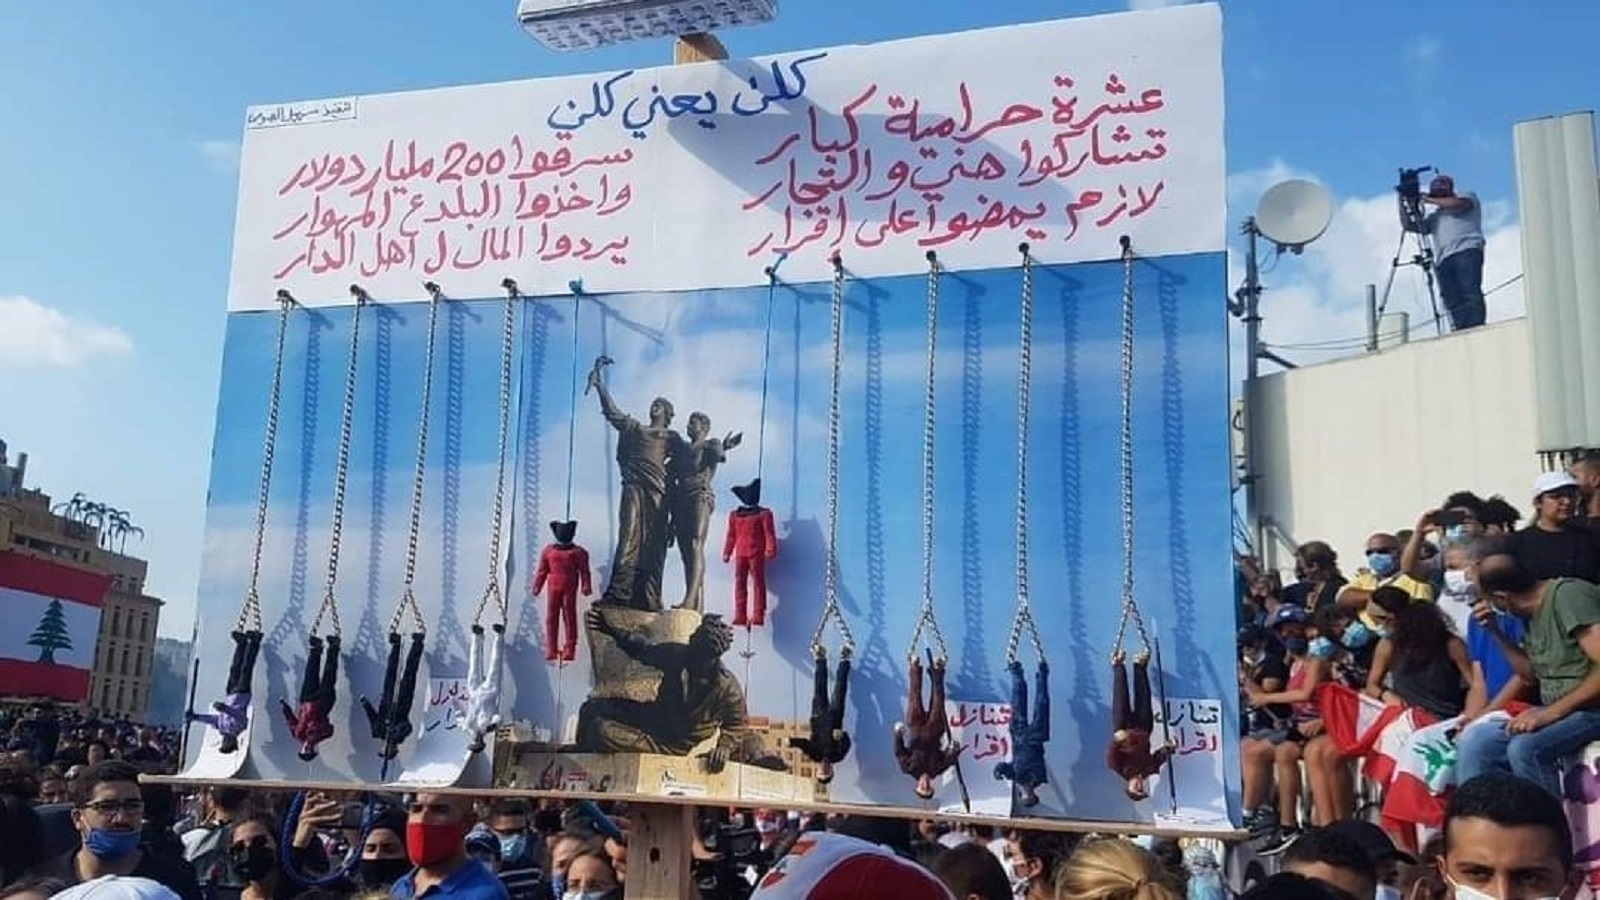 المشانق في وسط بيروت.. والسلطة ترد بالغاز المسيل للدموع